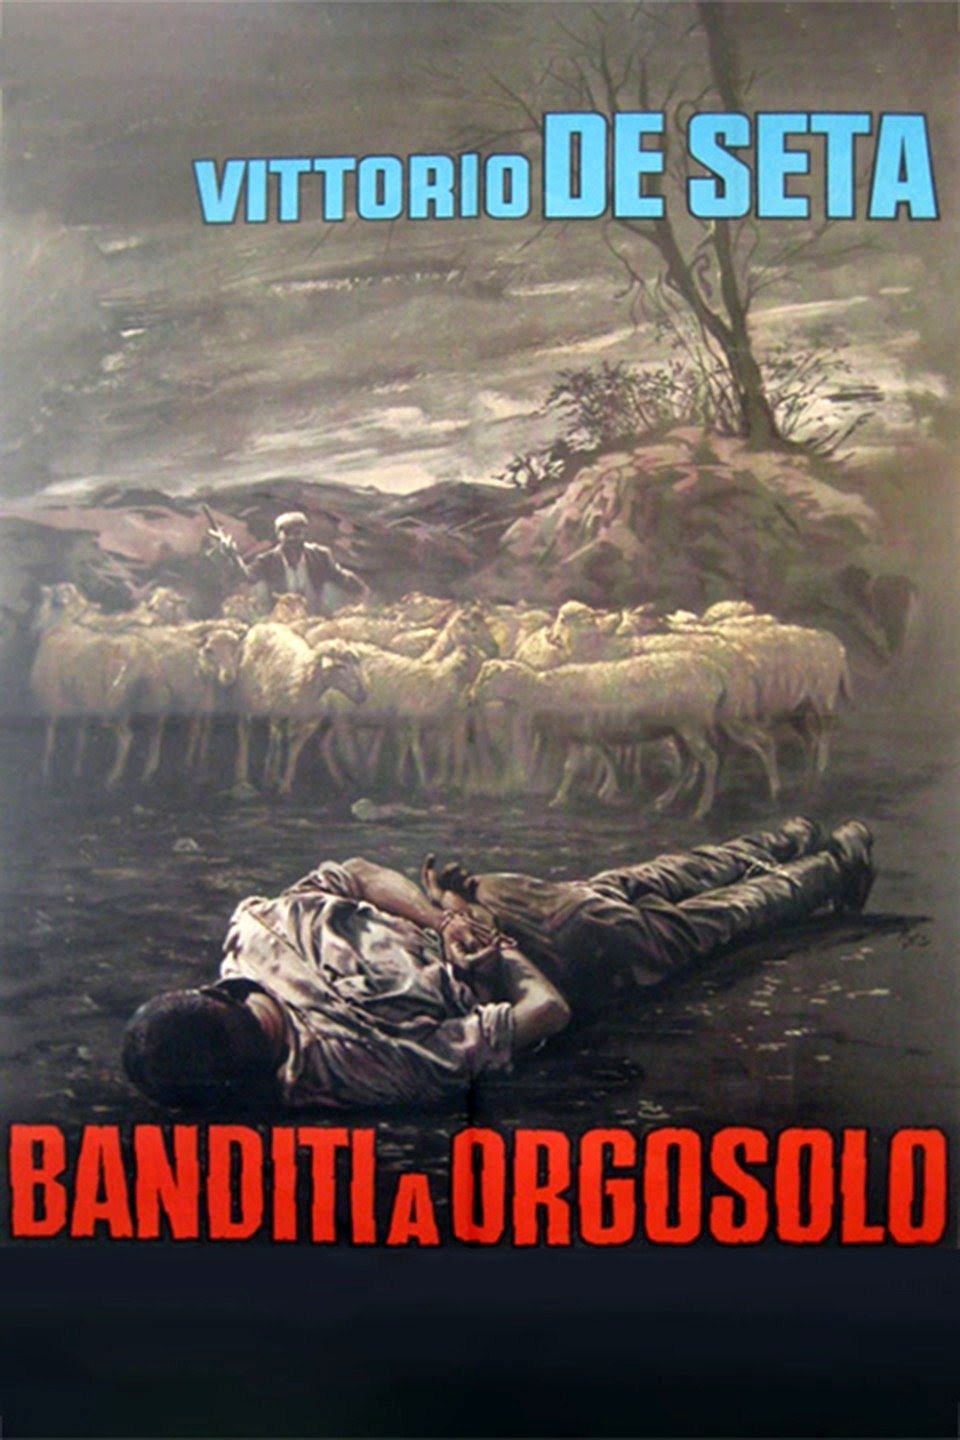 banditi-orgosolo-2